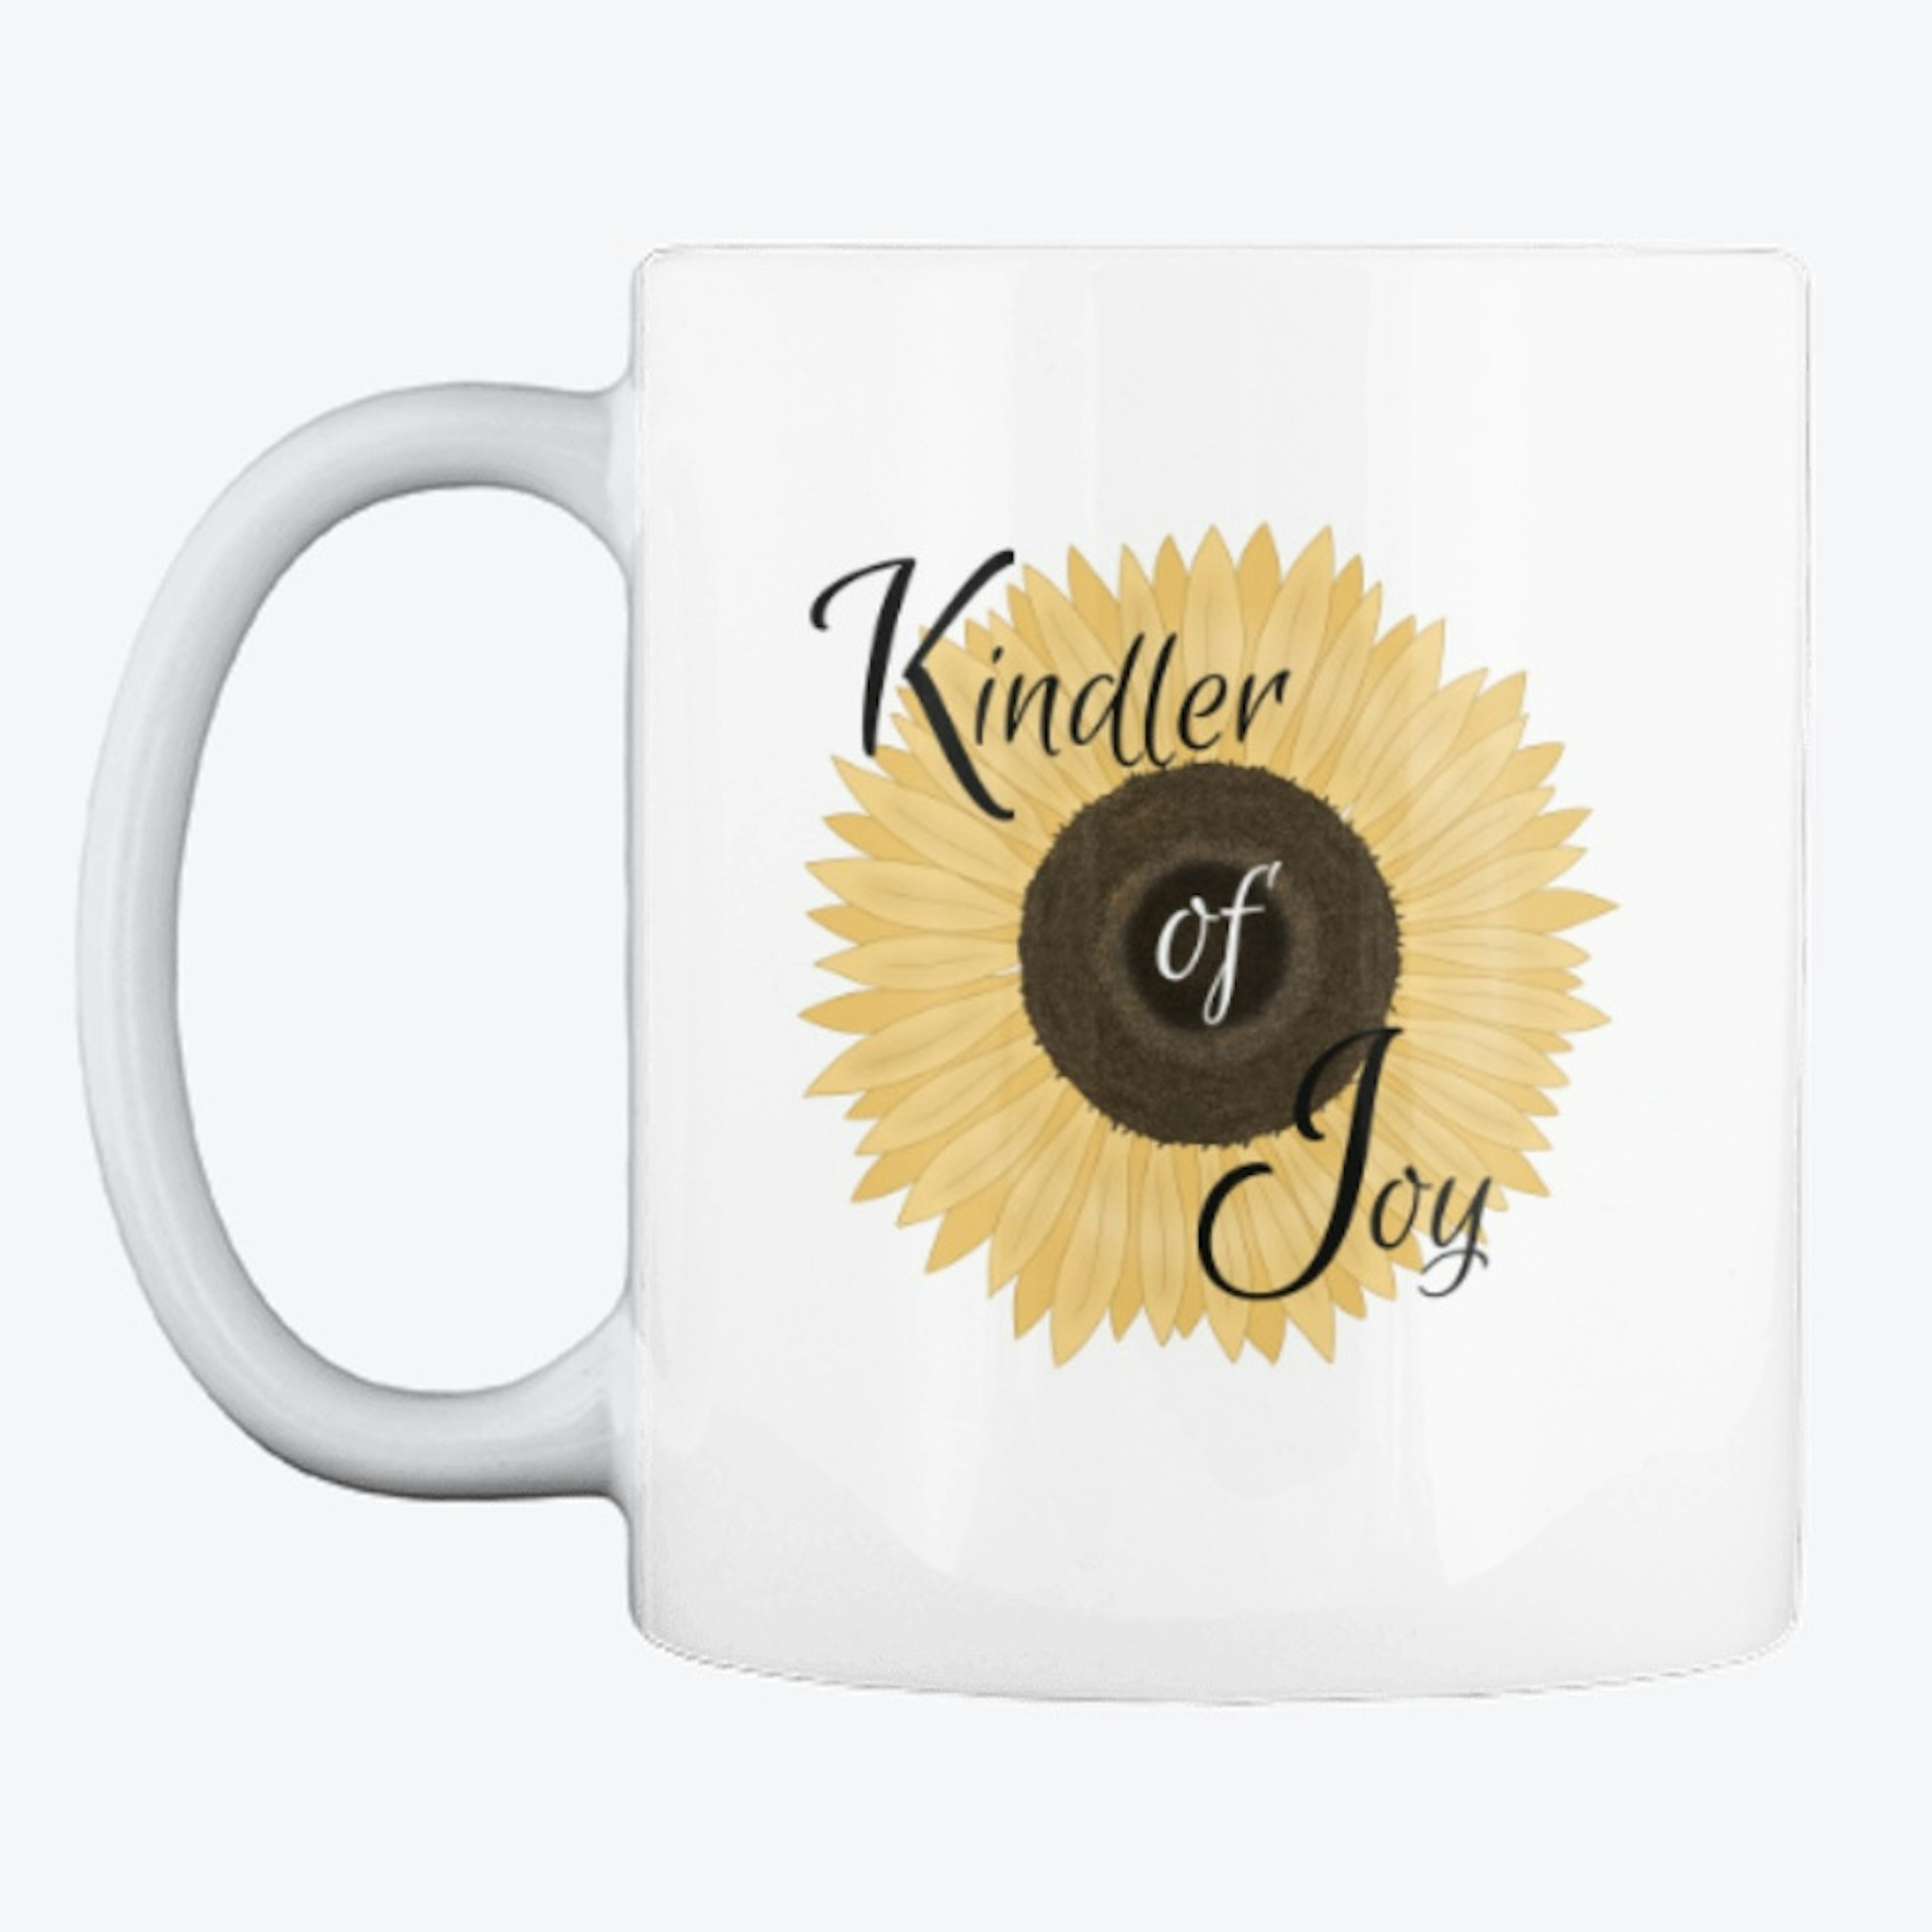 Kindler of Joy